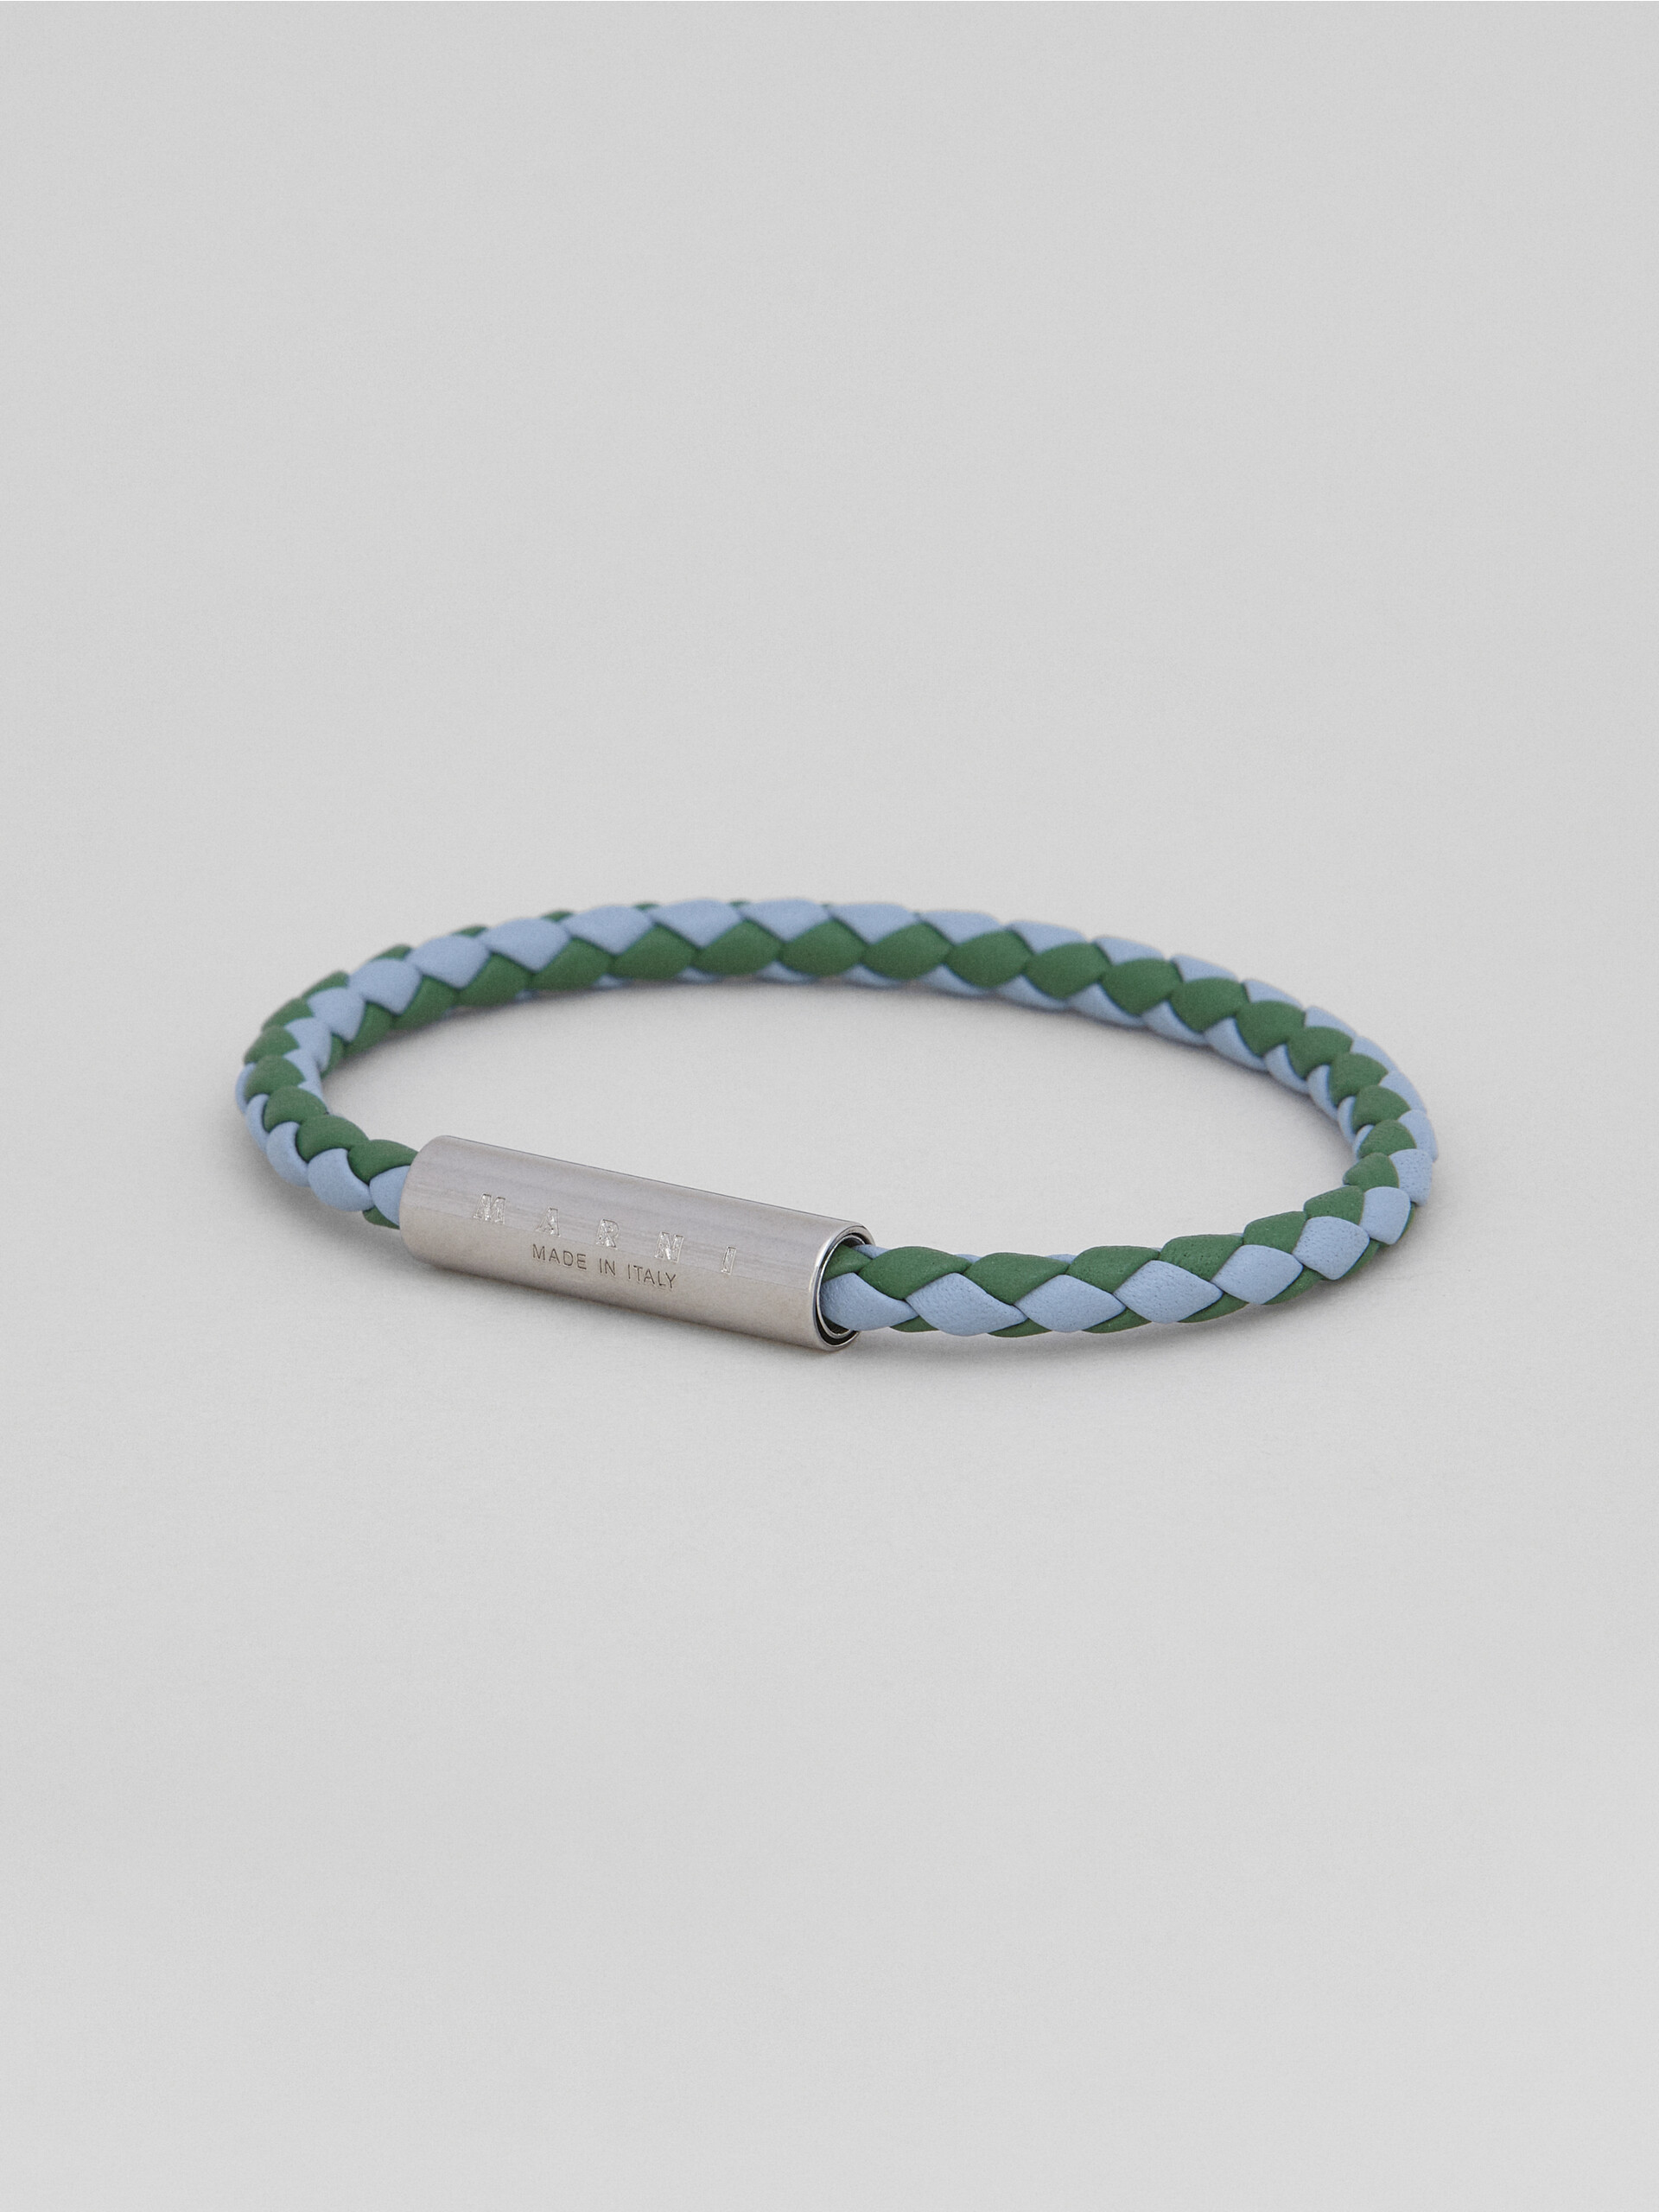 그린 & 라이트 블루 브레이디드 가죽 브레이슬릿 - Bracelets - Image 4